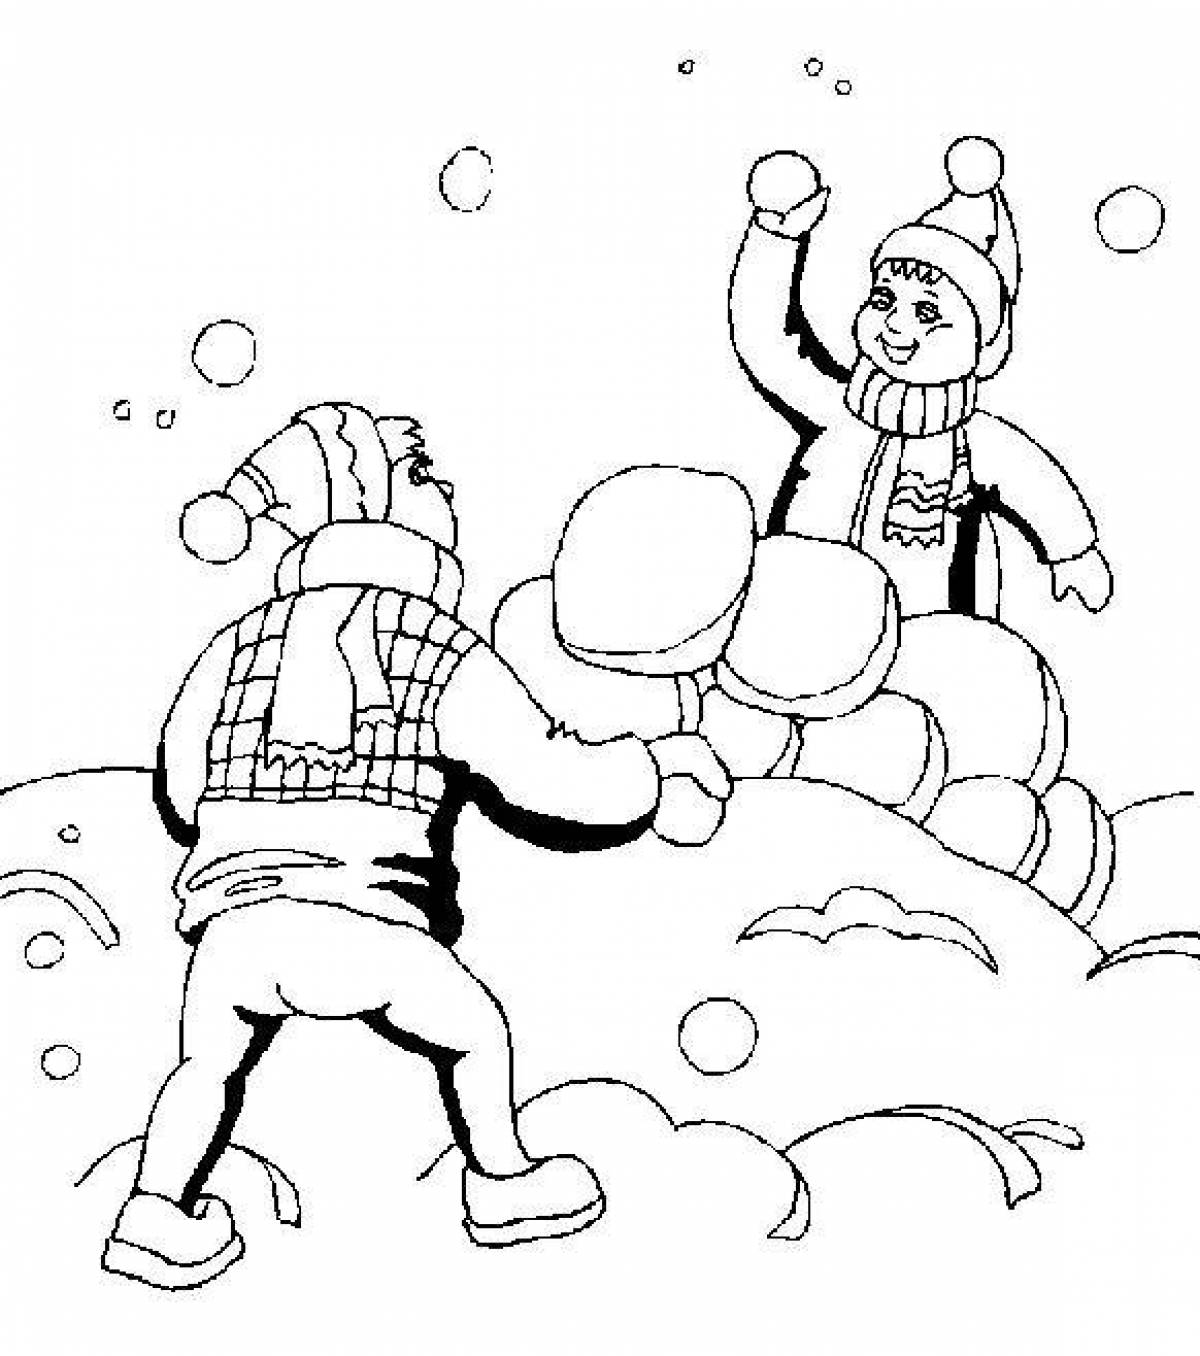 Игра в снежки с безумной раскраской